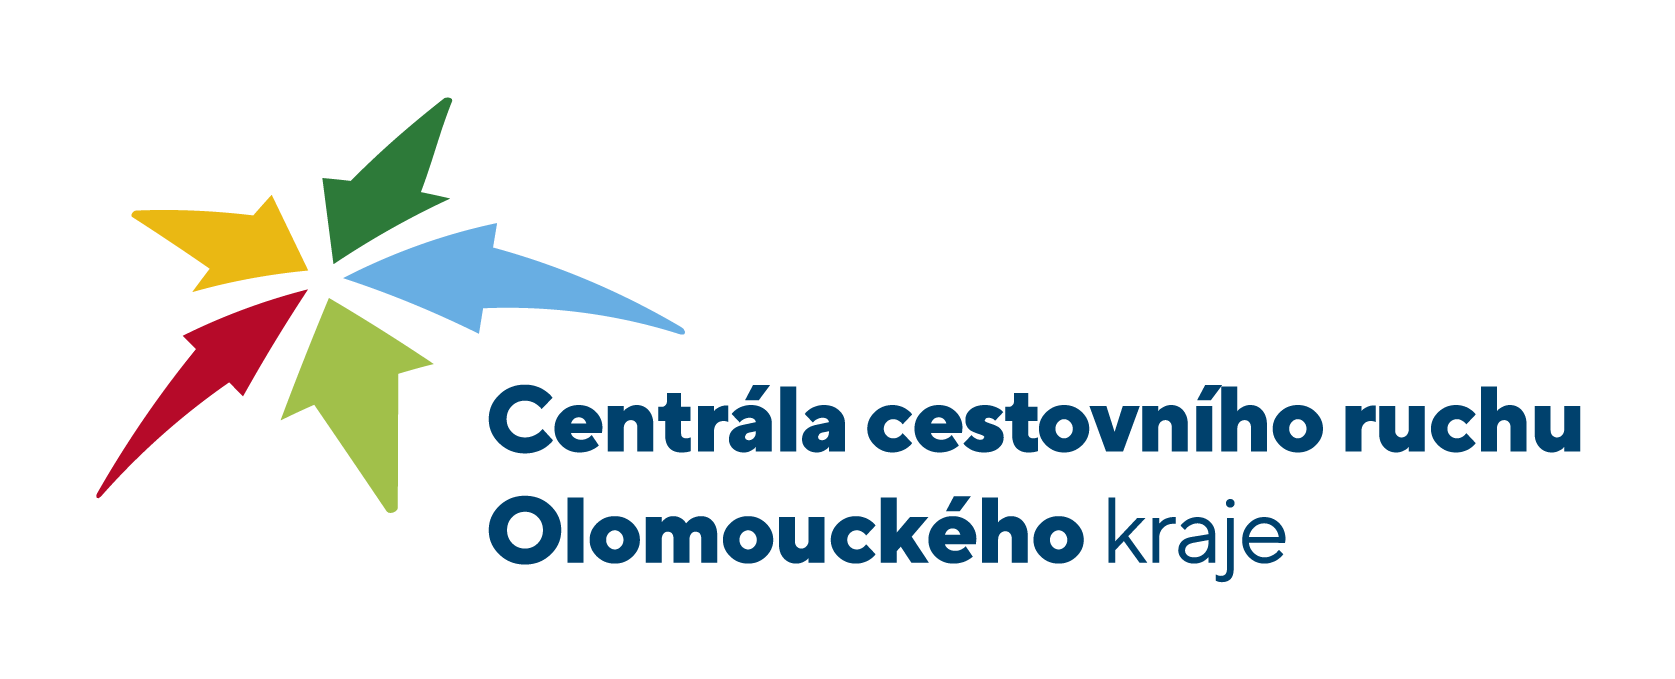 Centrála cestovního ruchu Olomouckého kraje